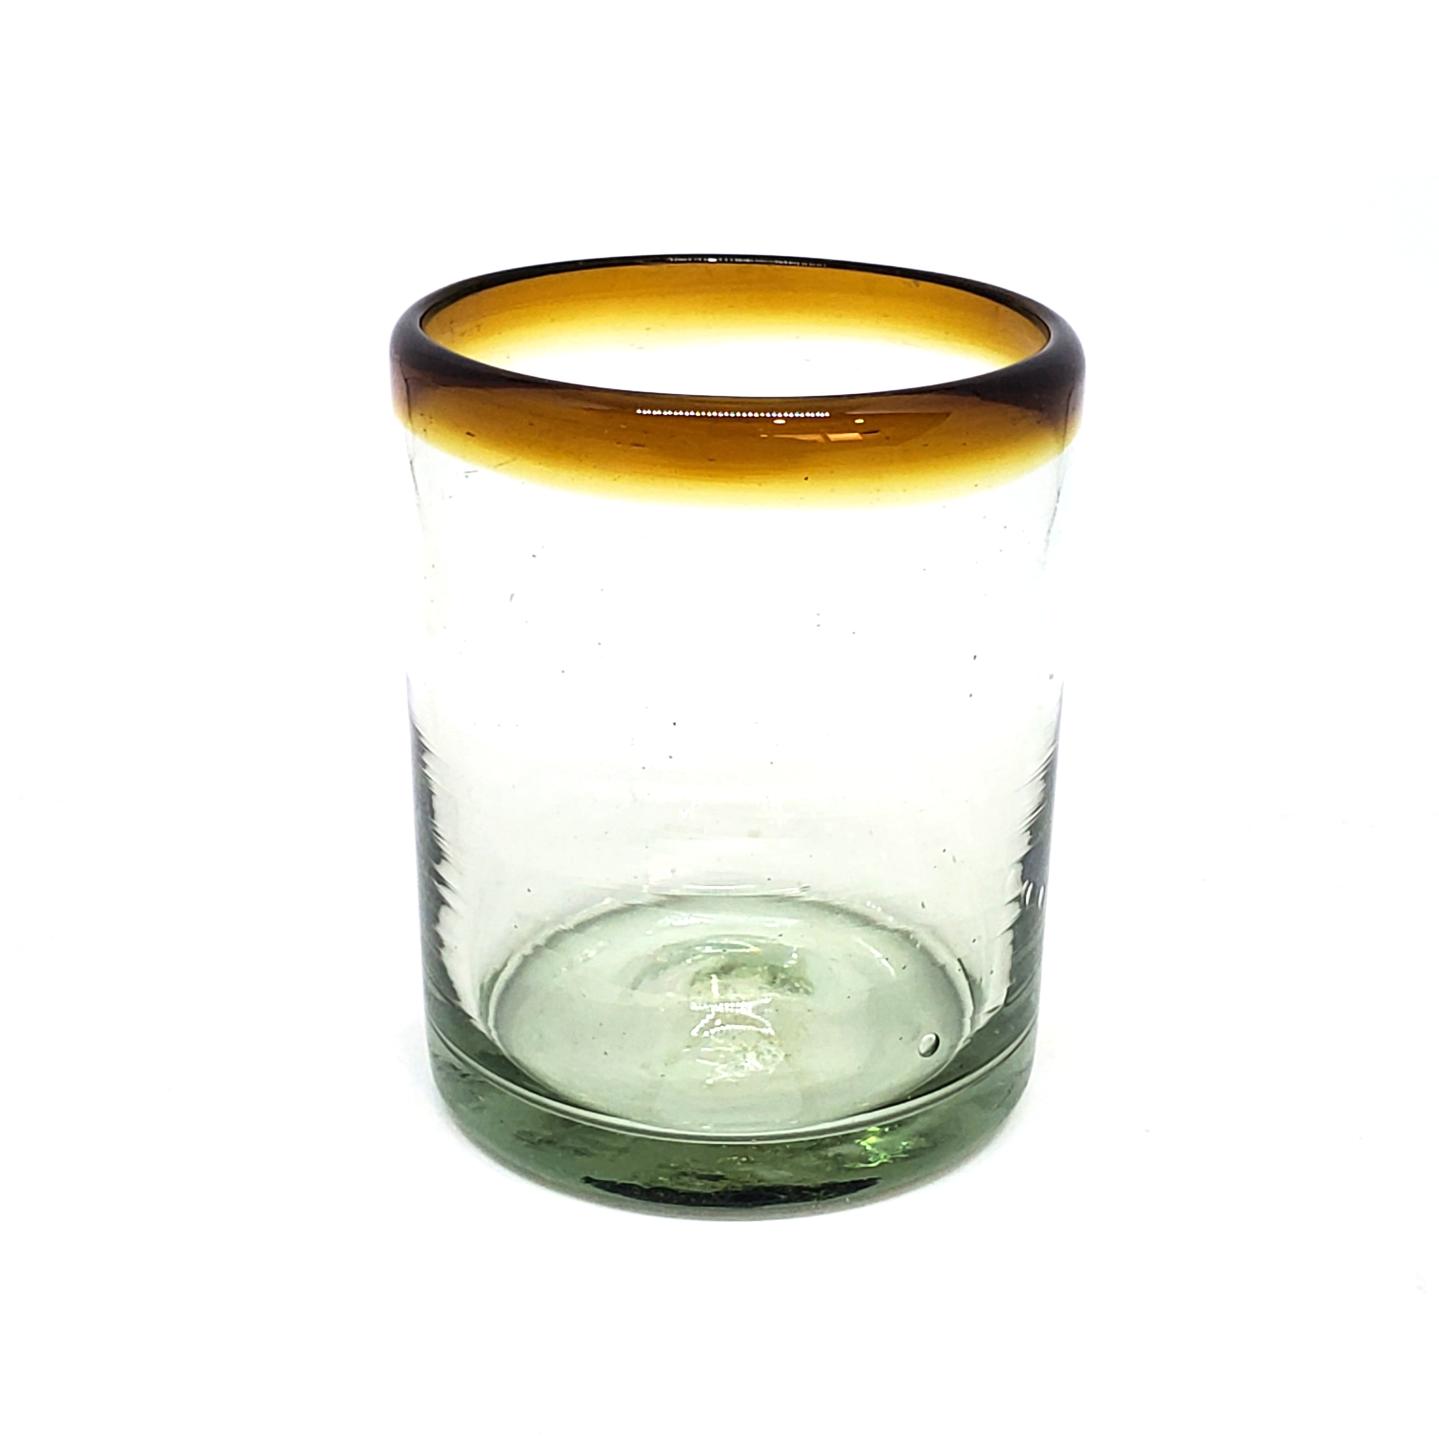 Vasos de Vidrio Soplado / Juego de 6 vasos chicos con borde color mbar / ste festivo juego de vasos es ideal para tomar leche con galletas o beber limonada en un da caluroso.